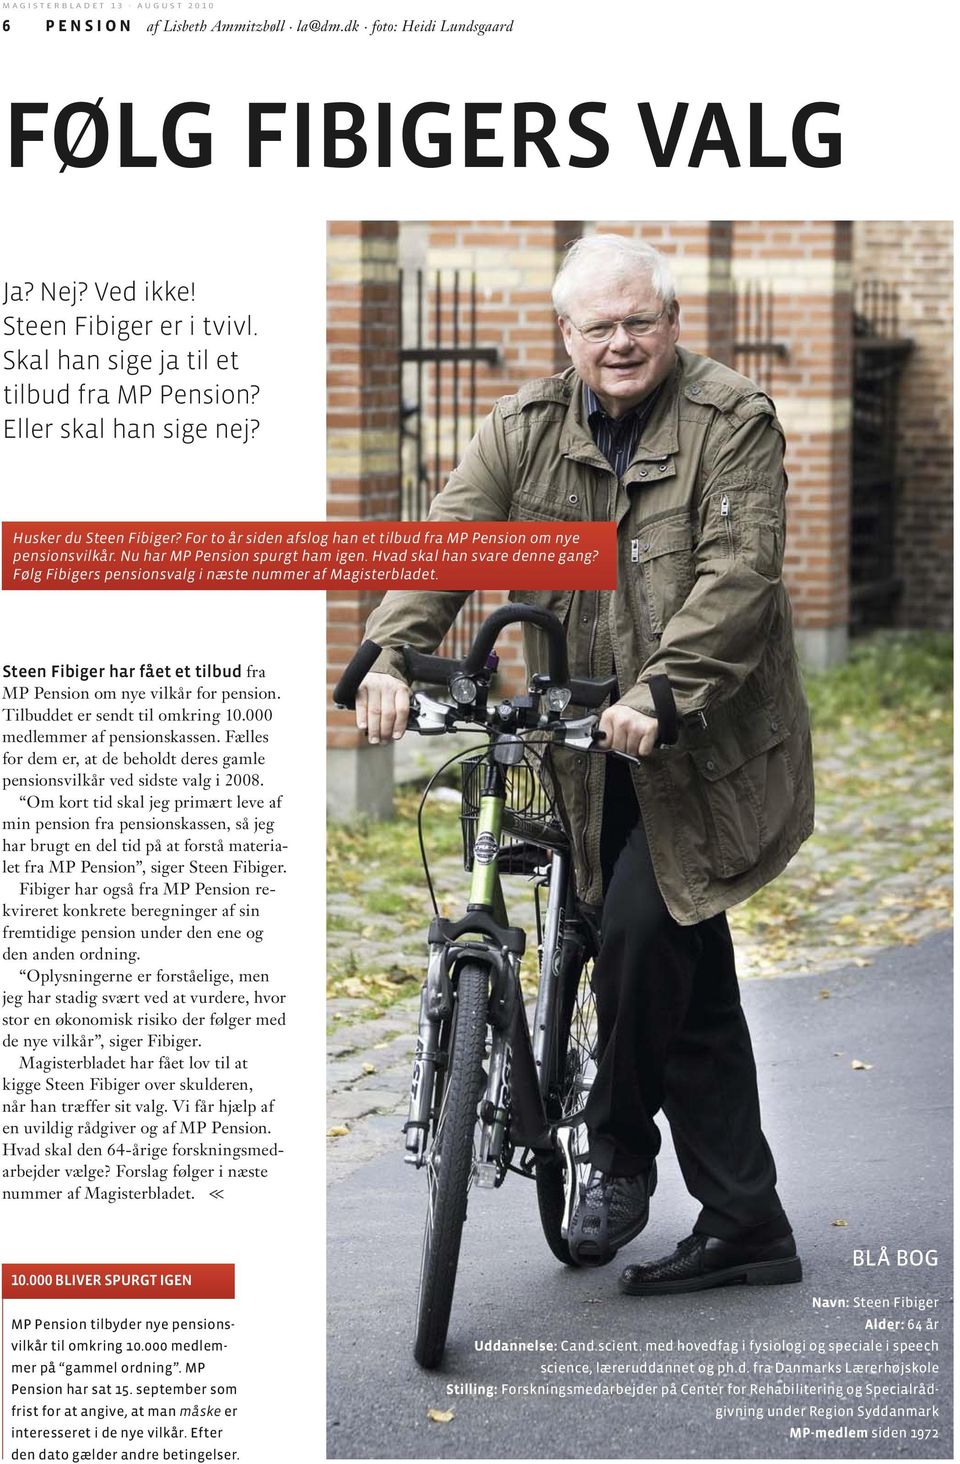 Følg Fibigers pensionsvalg i næste nummer af Magisterbladet. Steen Fibiger har fået et tilbud fra MP Pension om nye vilkår for pension. Tilbuddet er sendt til omkring 10.